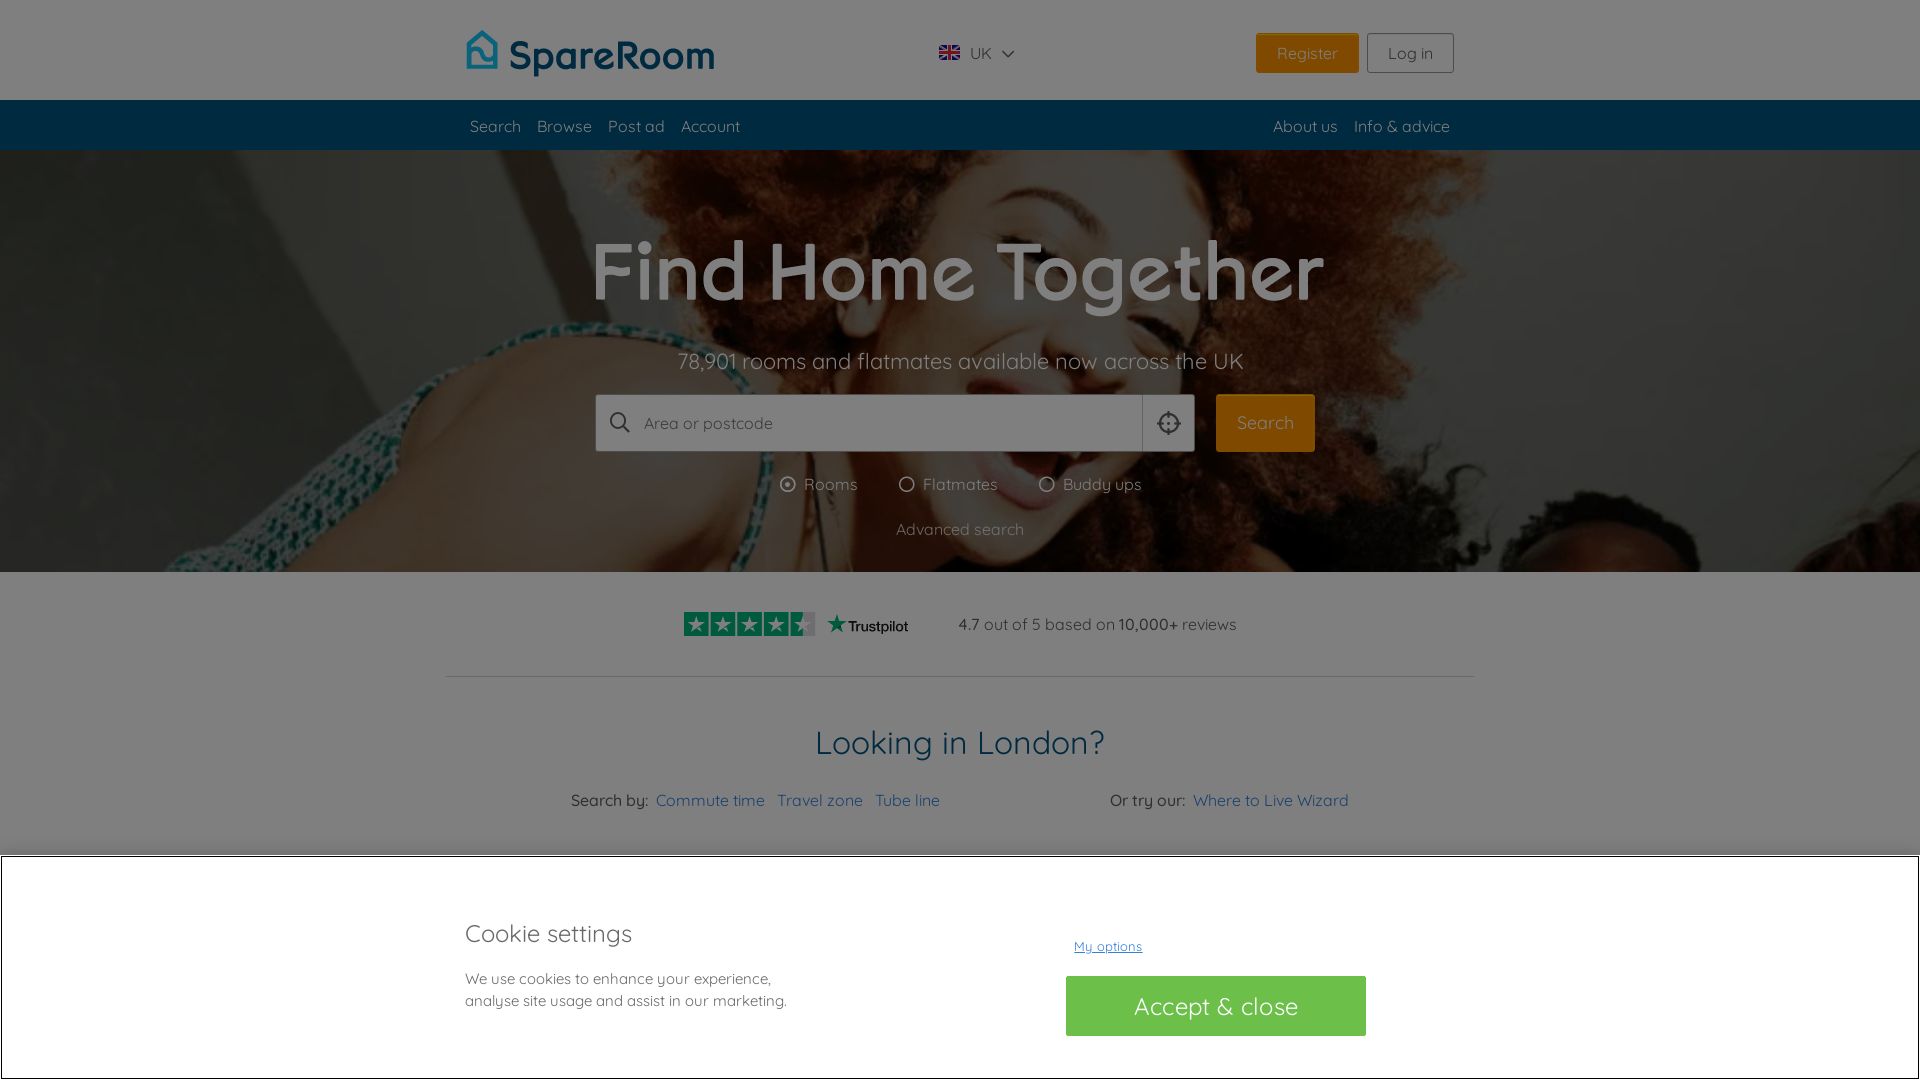 Website status spareroom.co.uk is   ONLINE